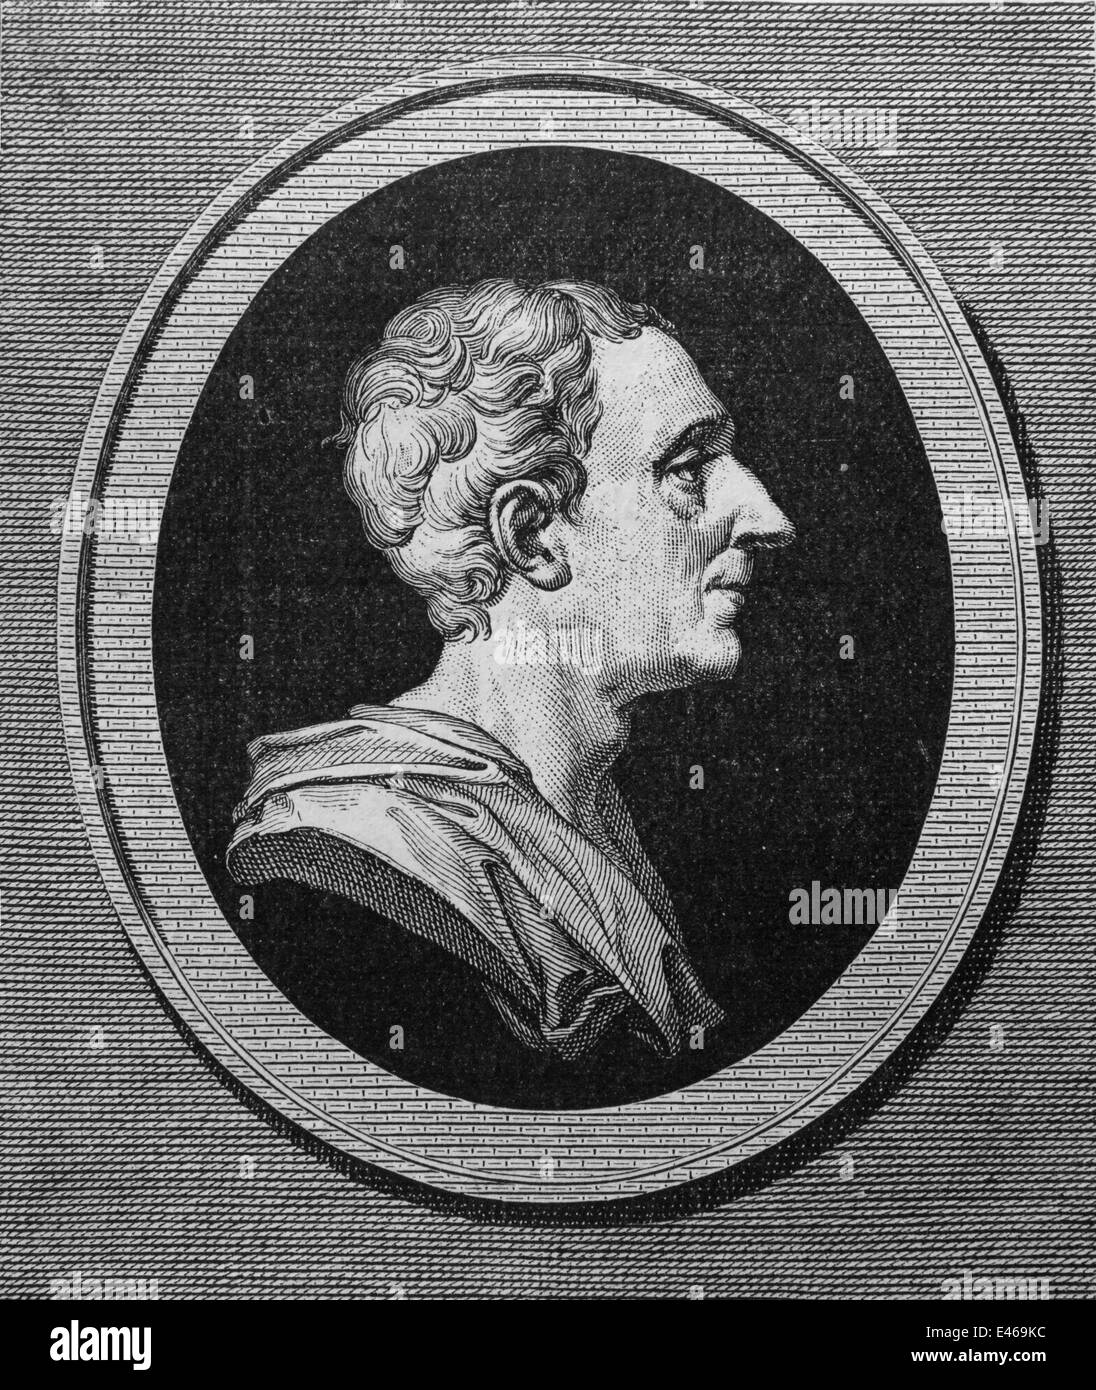 Montesquieu (1689-1755). Avvocato francese e filosofo politico. Teoria: separazione dei poteri. Età dei Lumi. Incisione. Foto Stock